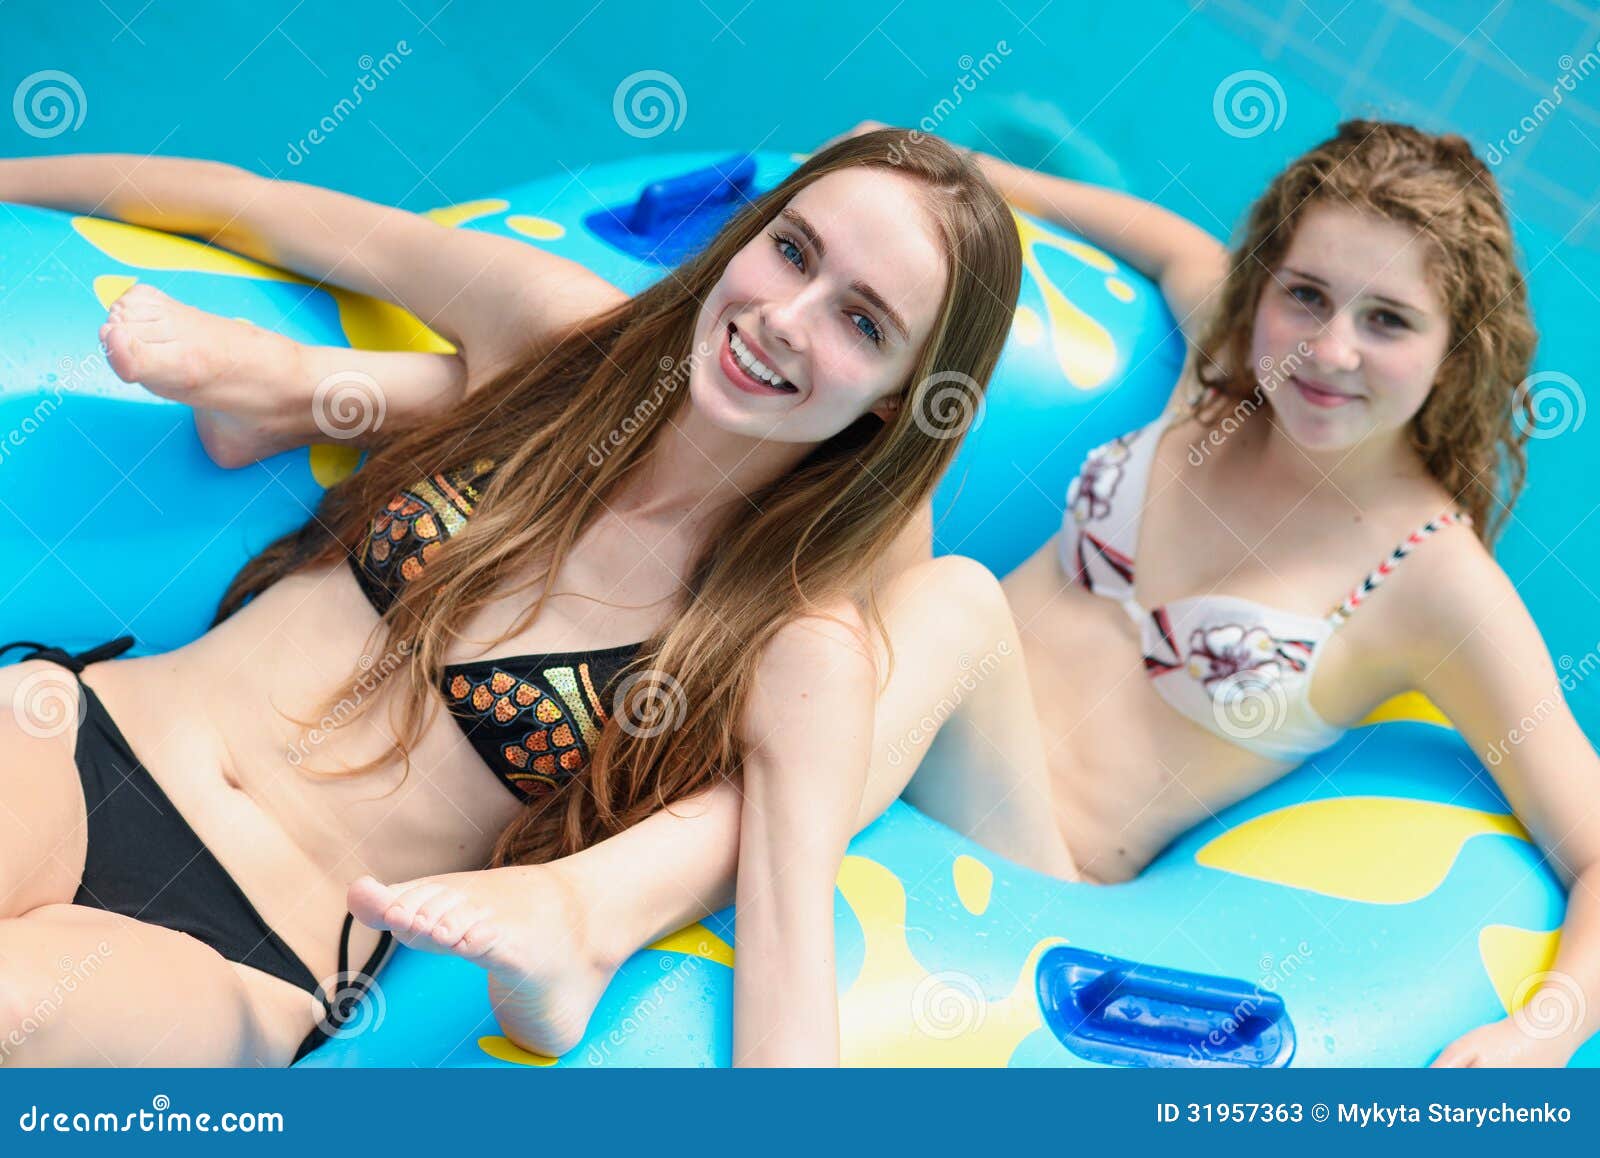 cecilia orourke recommends bikini vs water slide pic